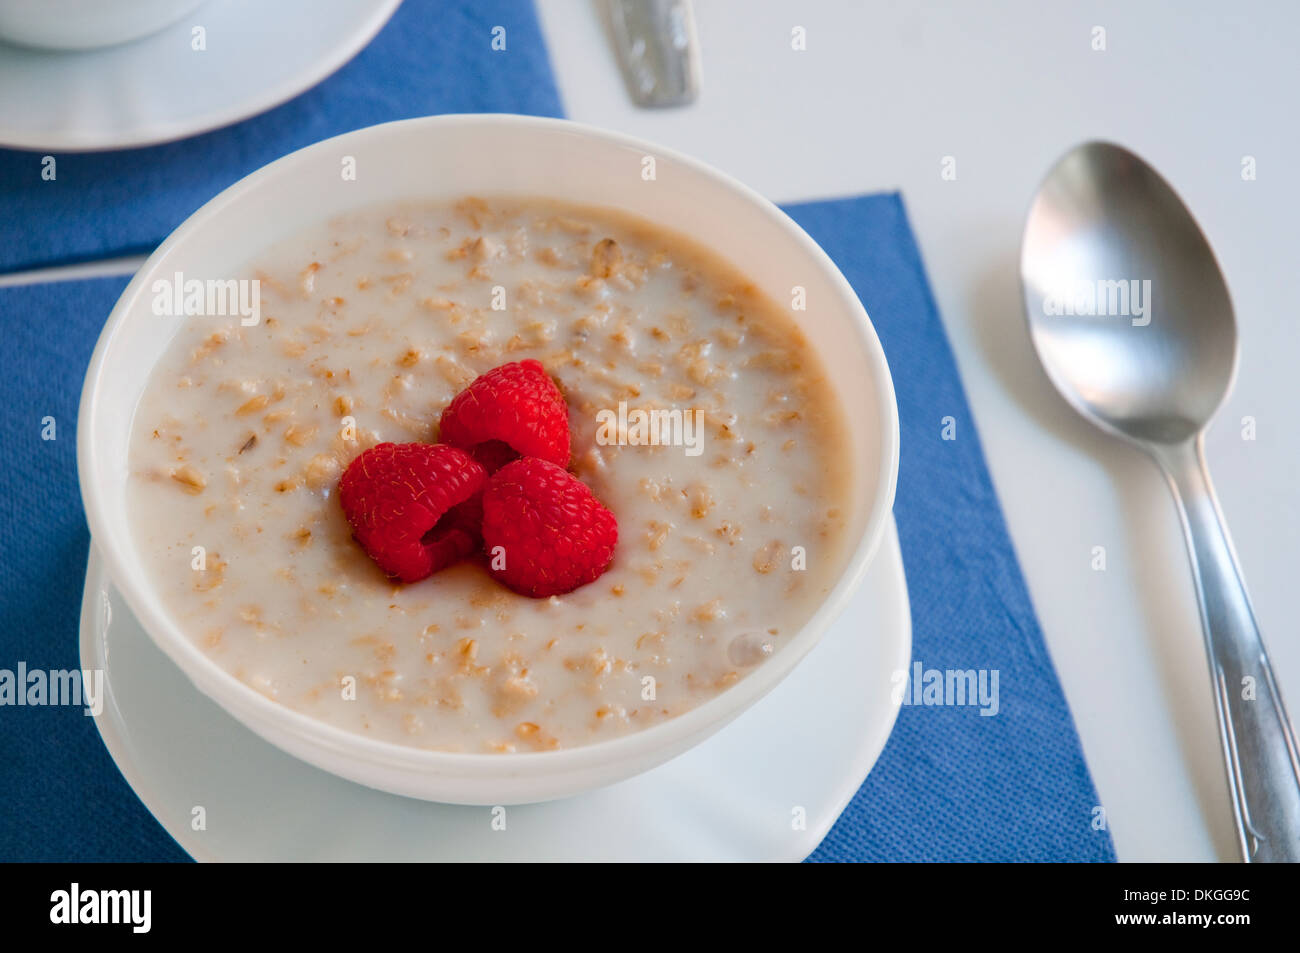 Porridge with raspberries. Close view. Stock Photo